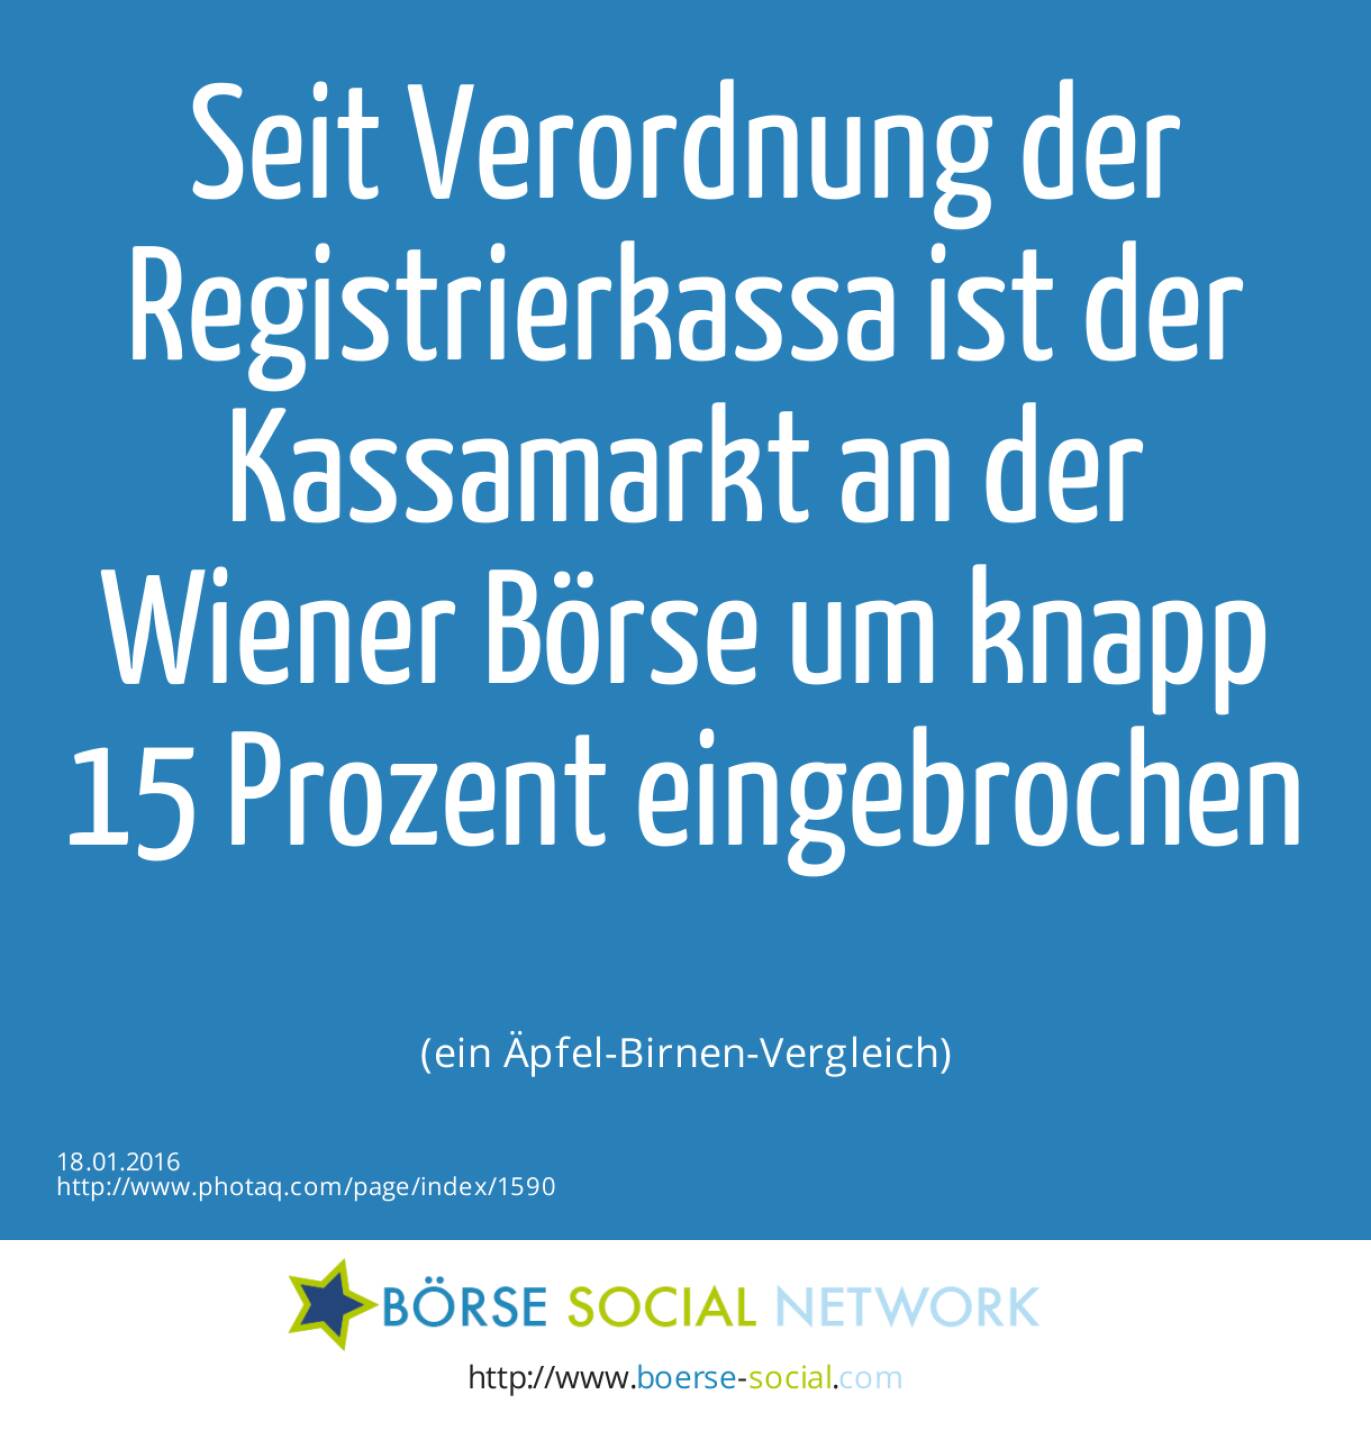 Seit Verordnung der Registrierkassa ist der Kassamarkt an der Wiener Börse um knapp 15 Prozent eingebrochen<br><br> (ein Äpfel-Birnen-Vergleich)